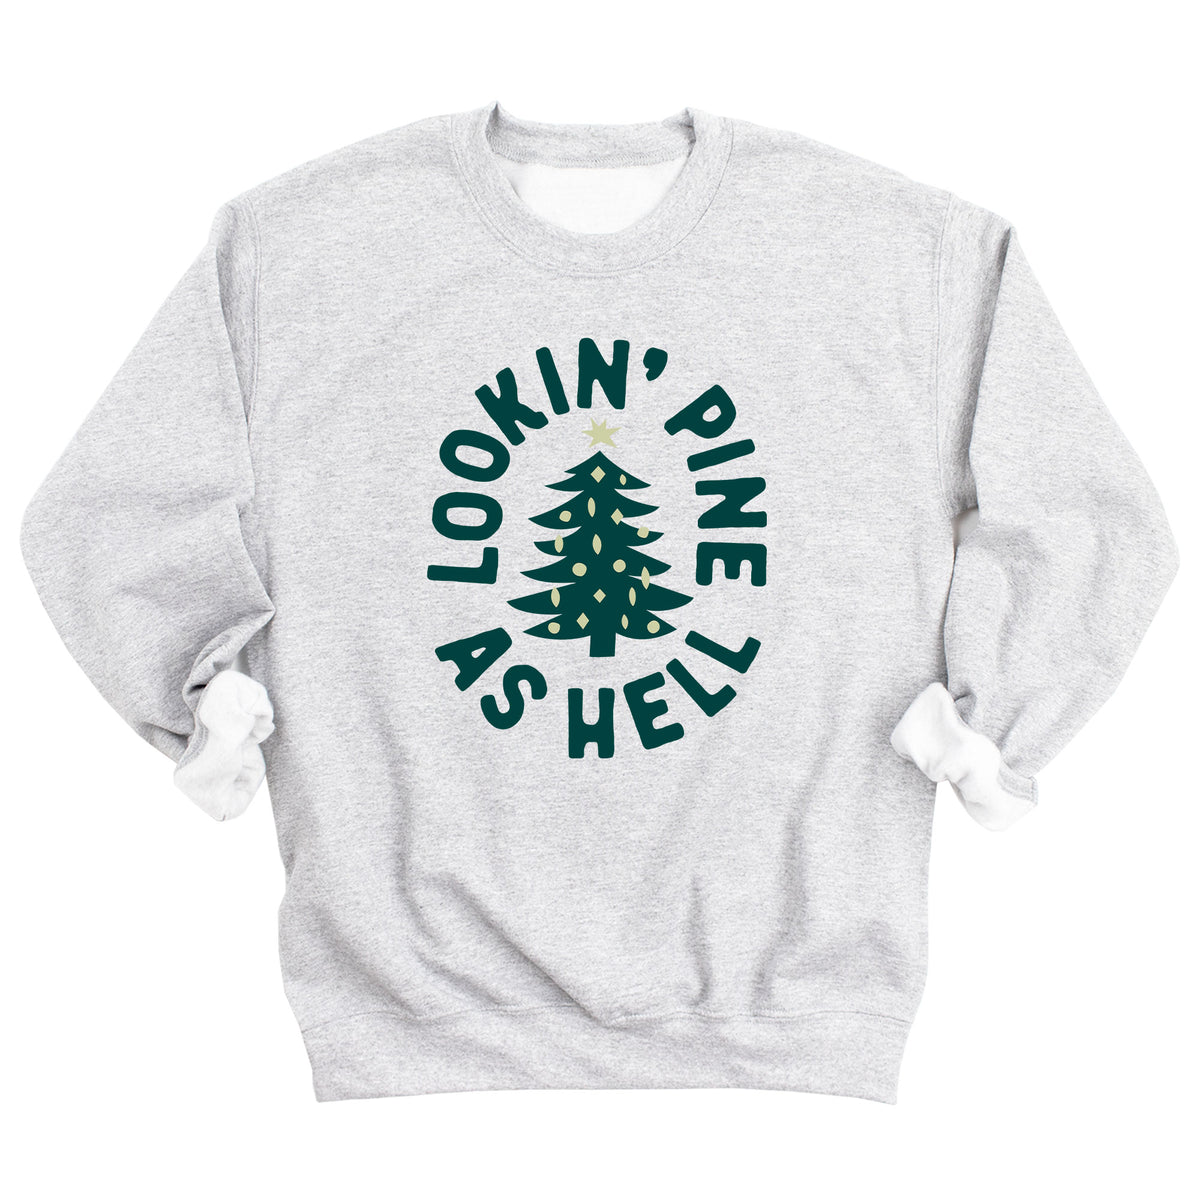 Lookin' Pine As Hell Sweatshirt